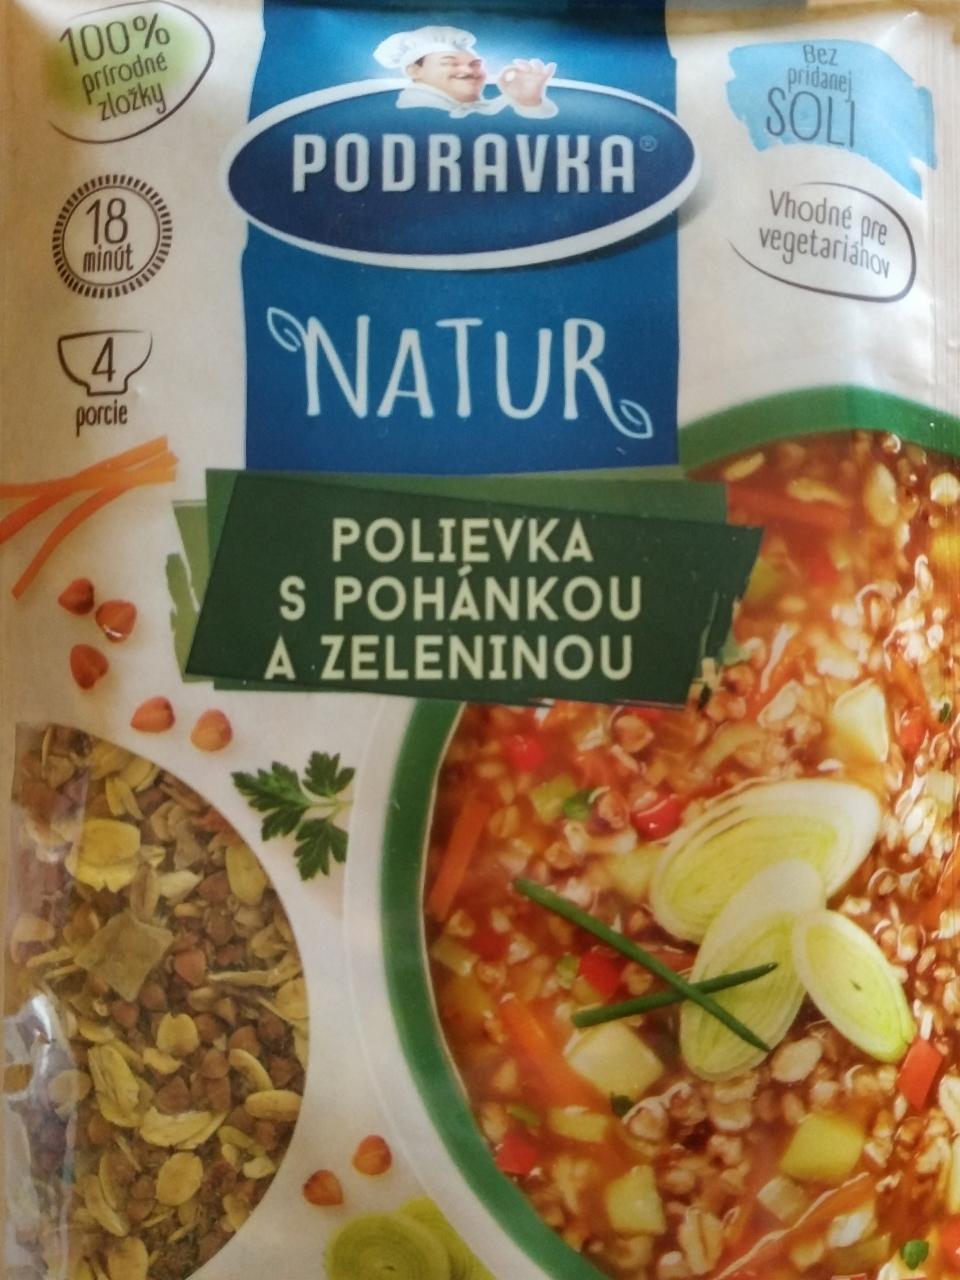 Fotografie - Natur polievka s pohánkou a zeleninou Podravka